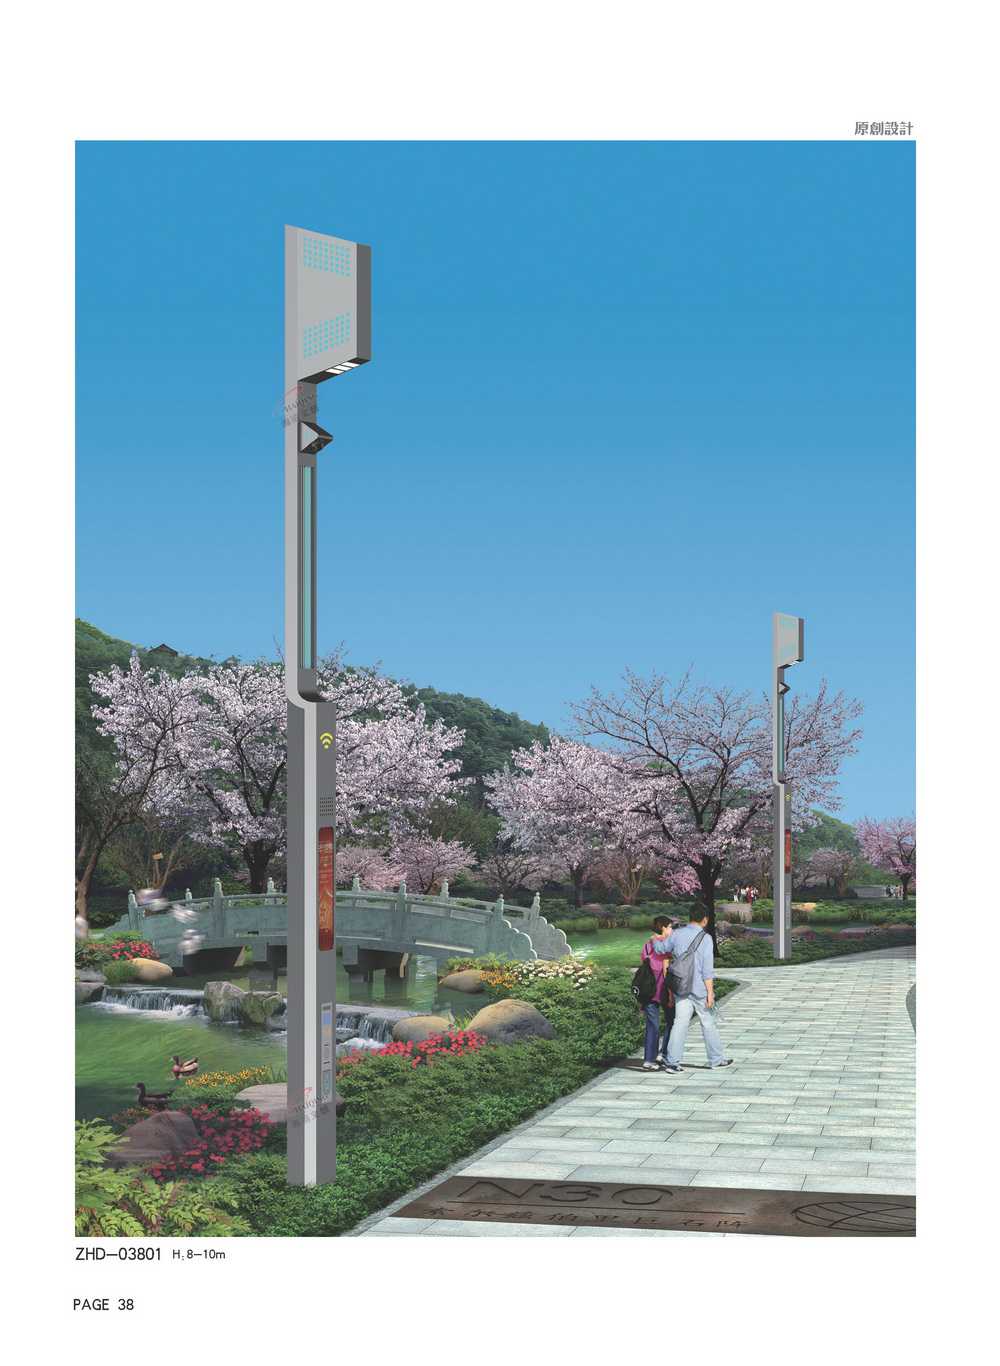 河南洛阳“智慧路灯+充电桩”给老旧小区居民带来便捷体验